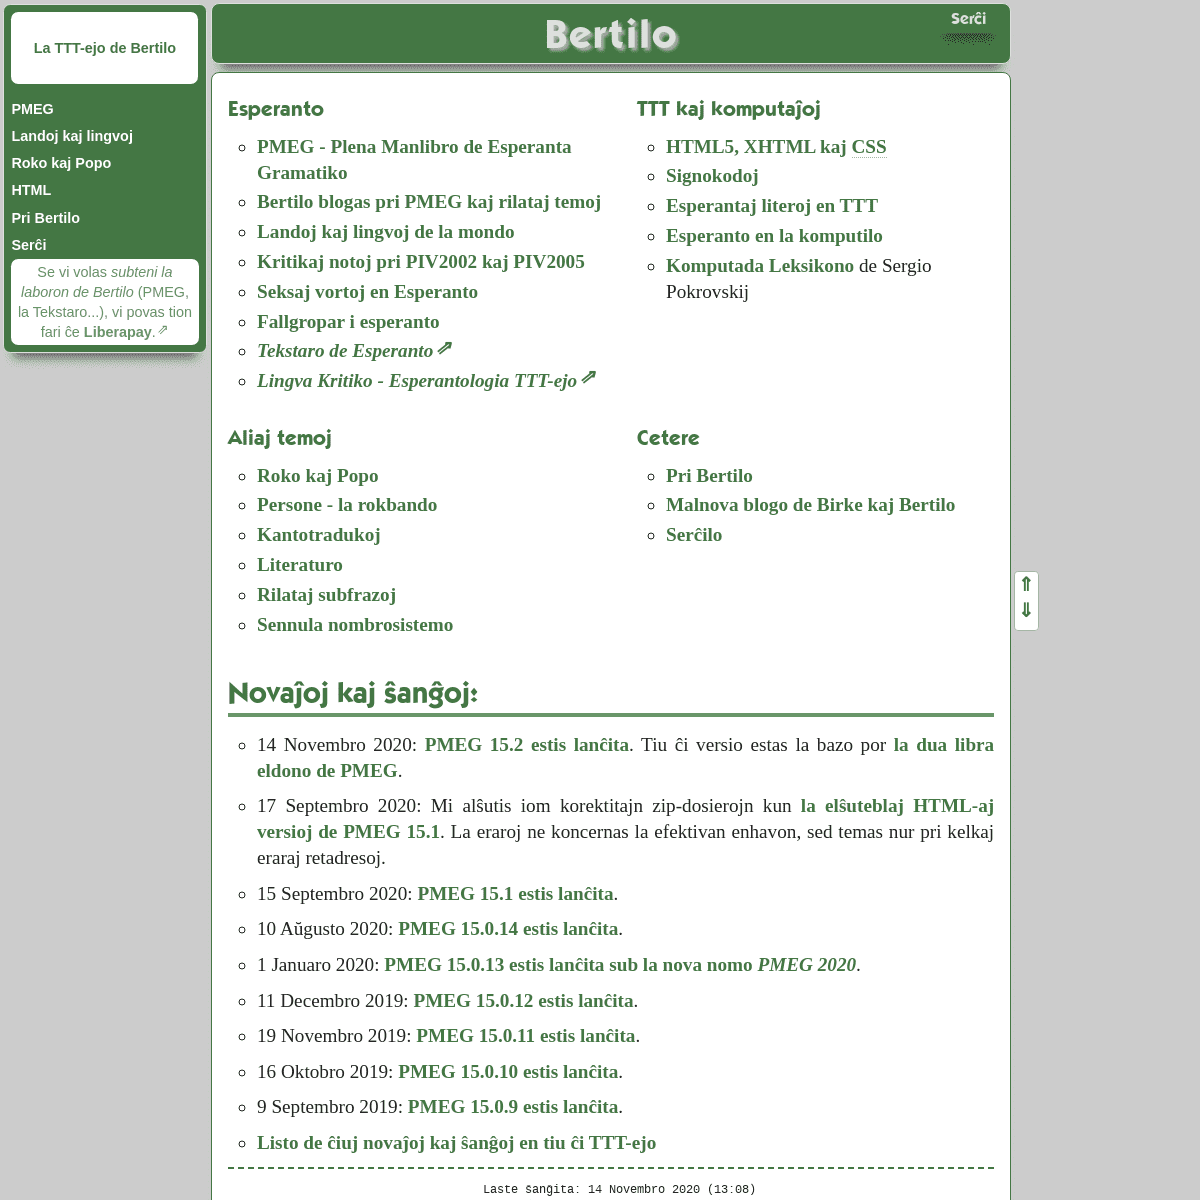 A complete backup of bertilow.com